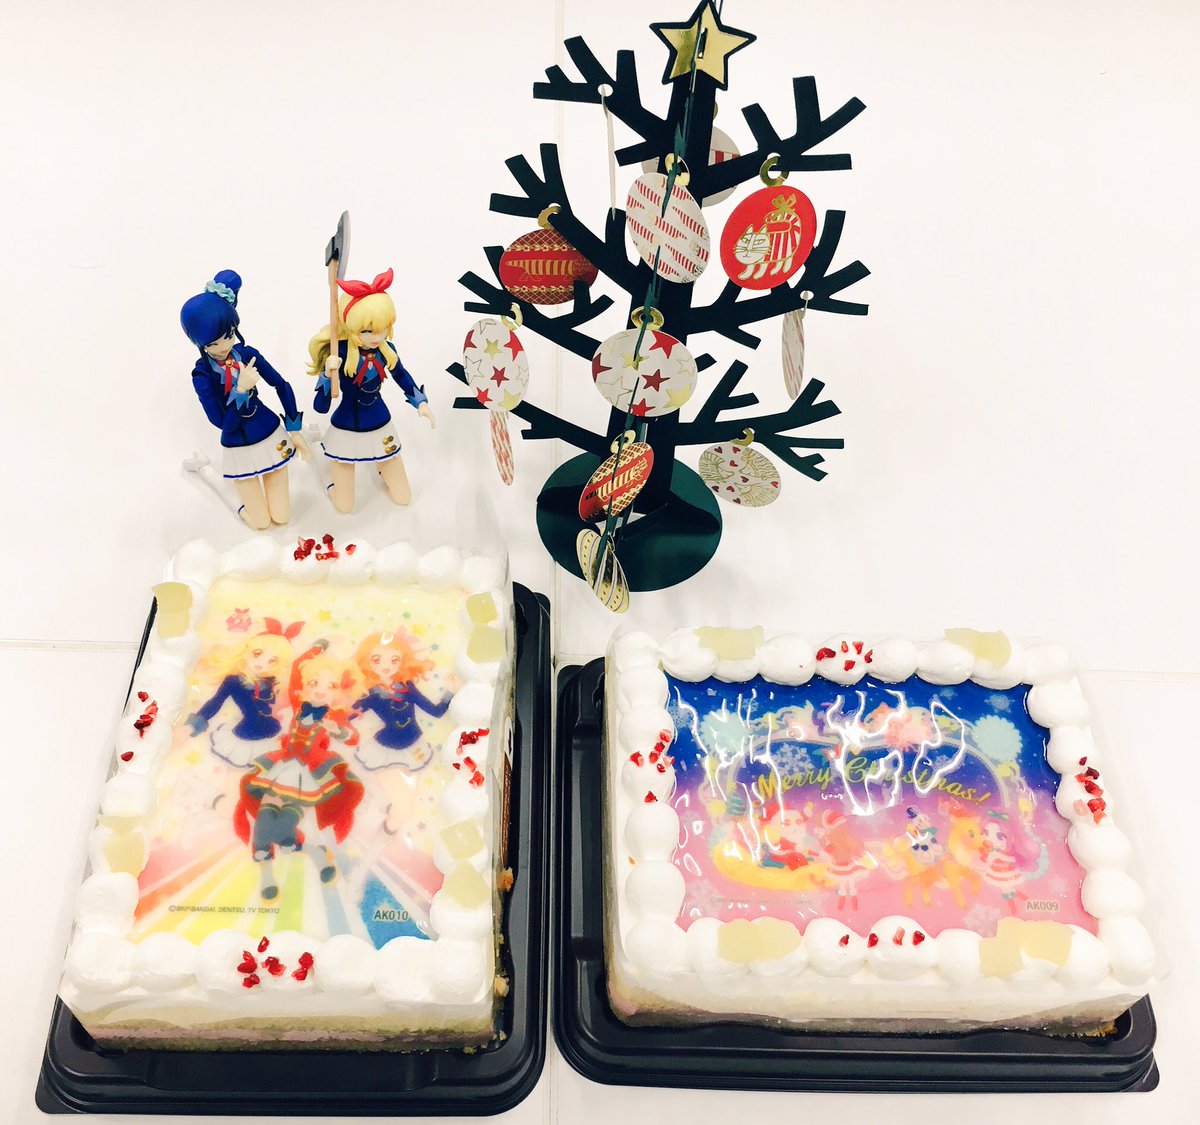 吉野屋 Twitter પર アイカツ１２話の斧カツみながらアイカツキャラデコケーキを食べる女児クリスマス会した ハッピー